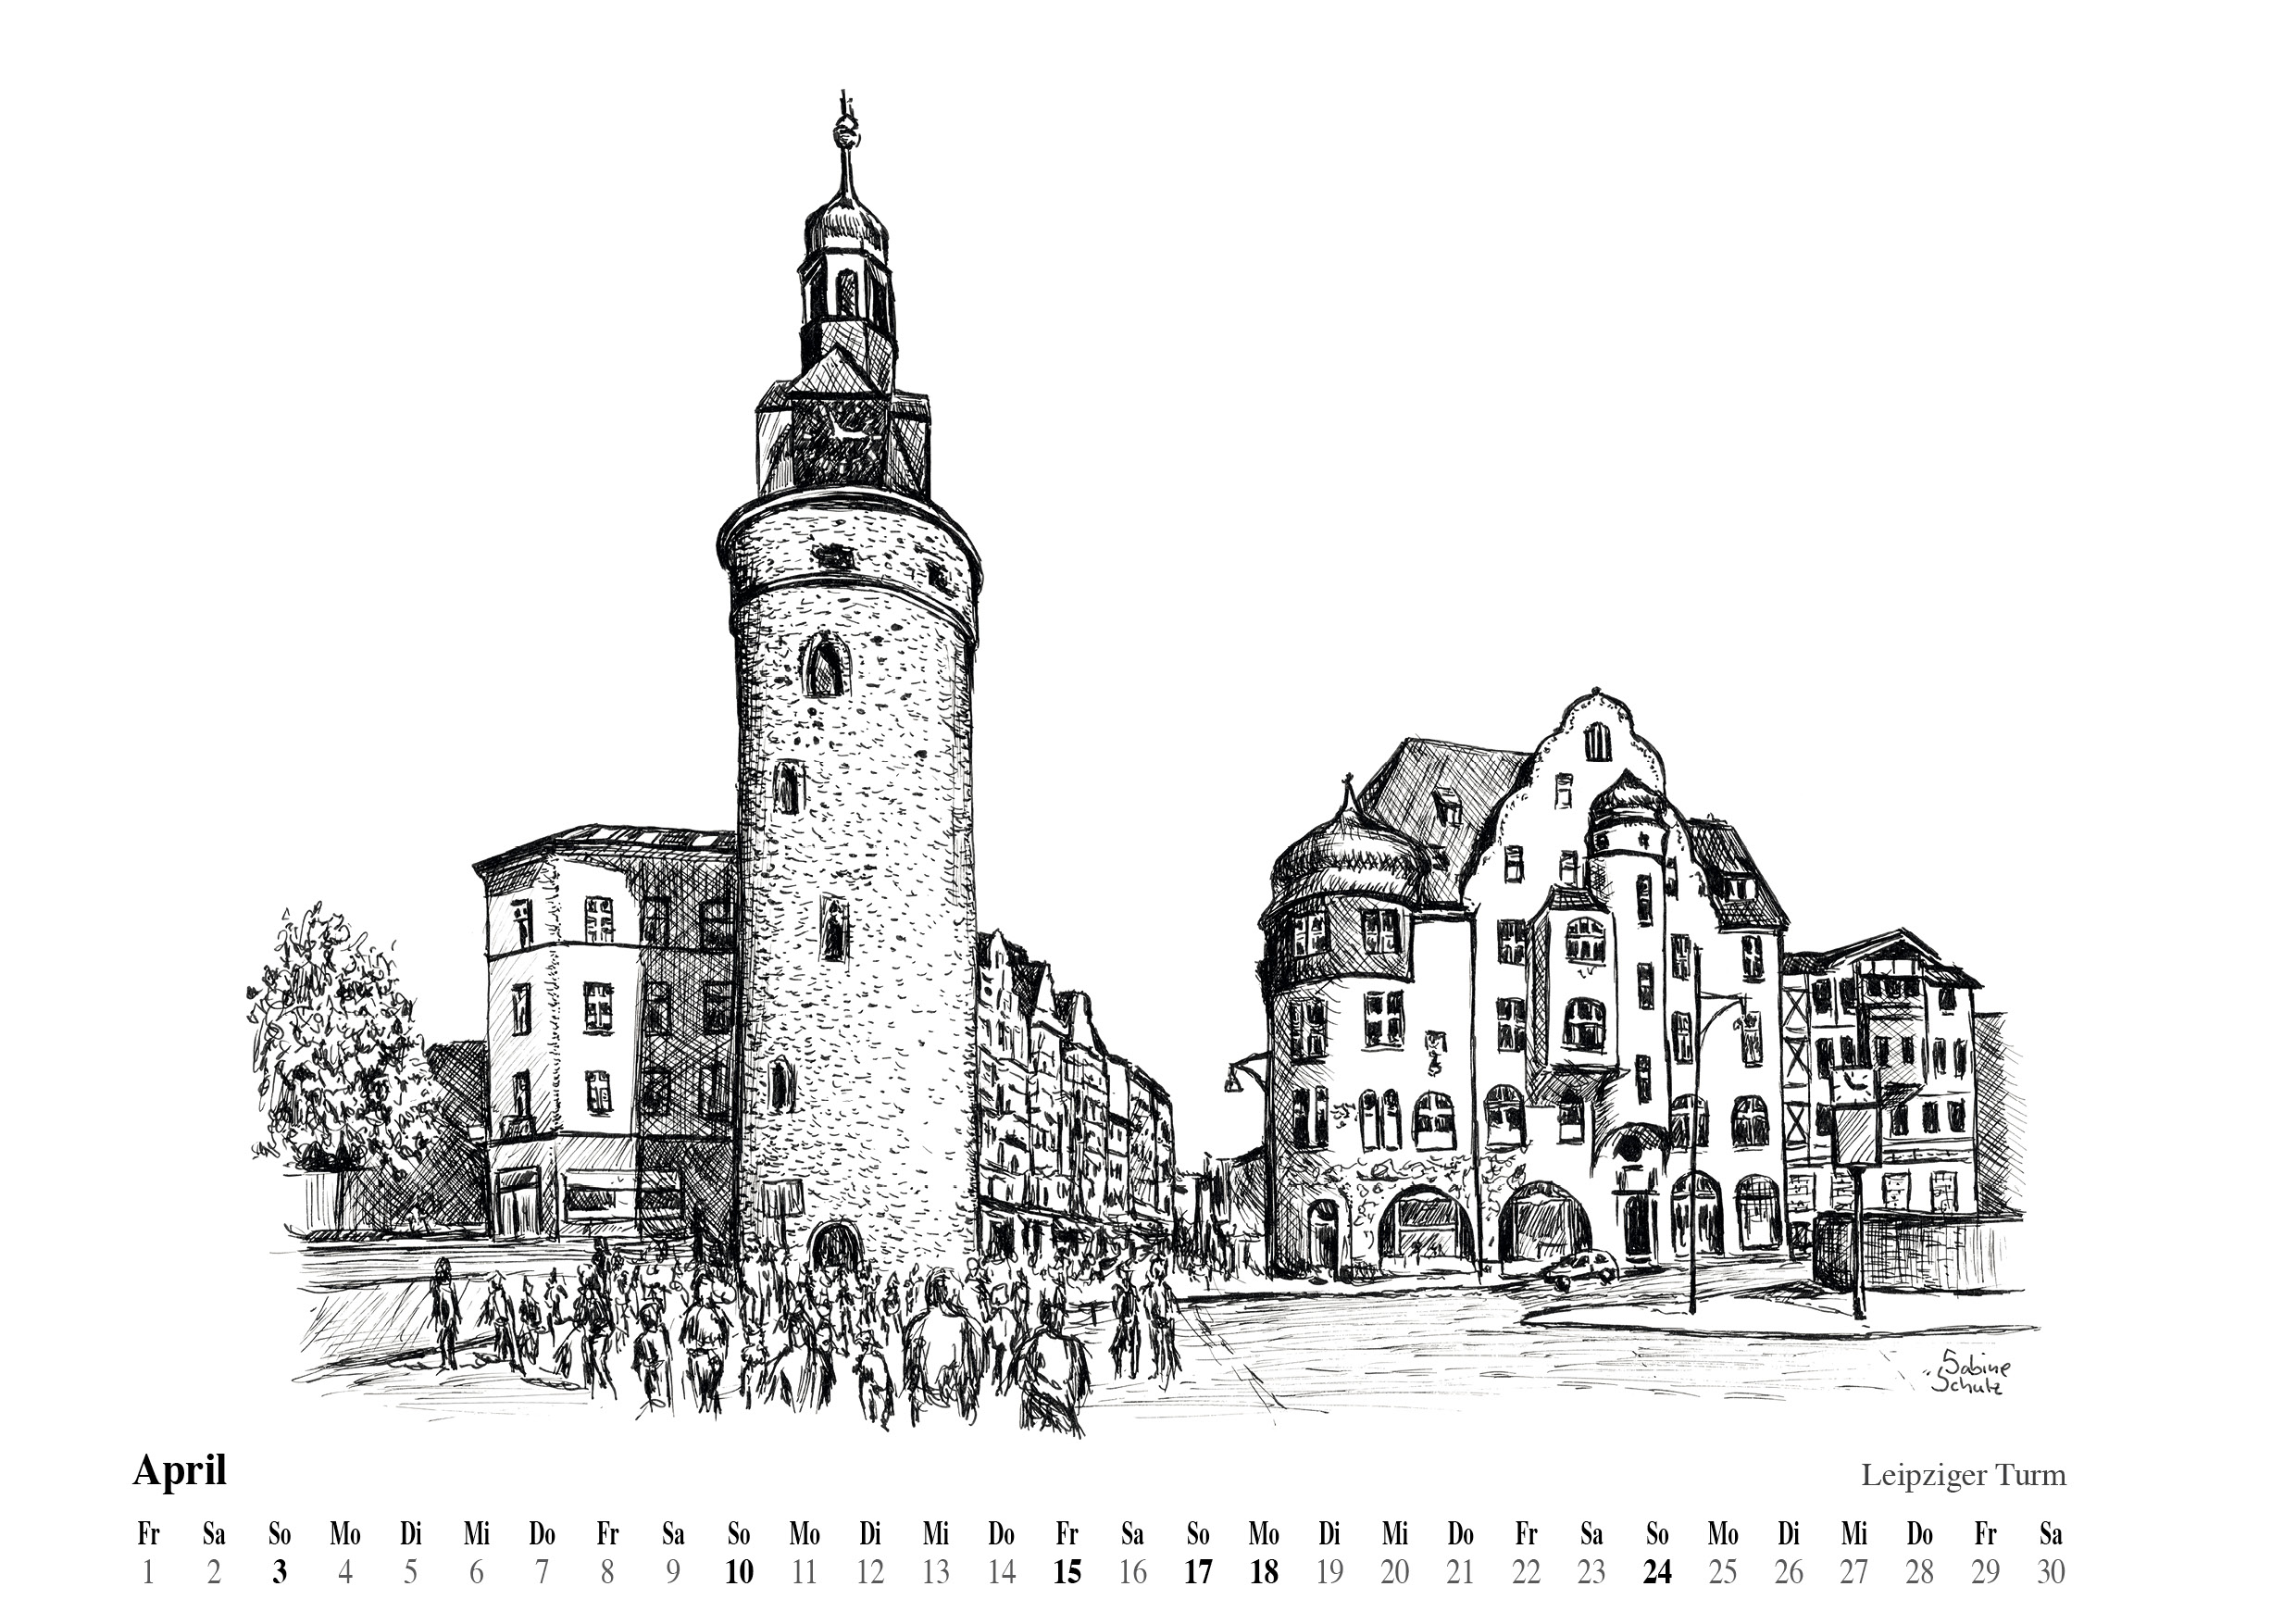 Leipziger Turm, Halle (Saale)